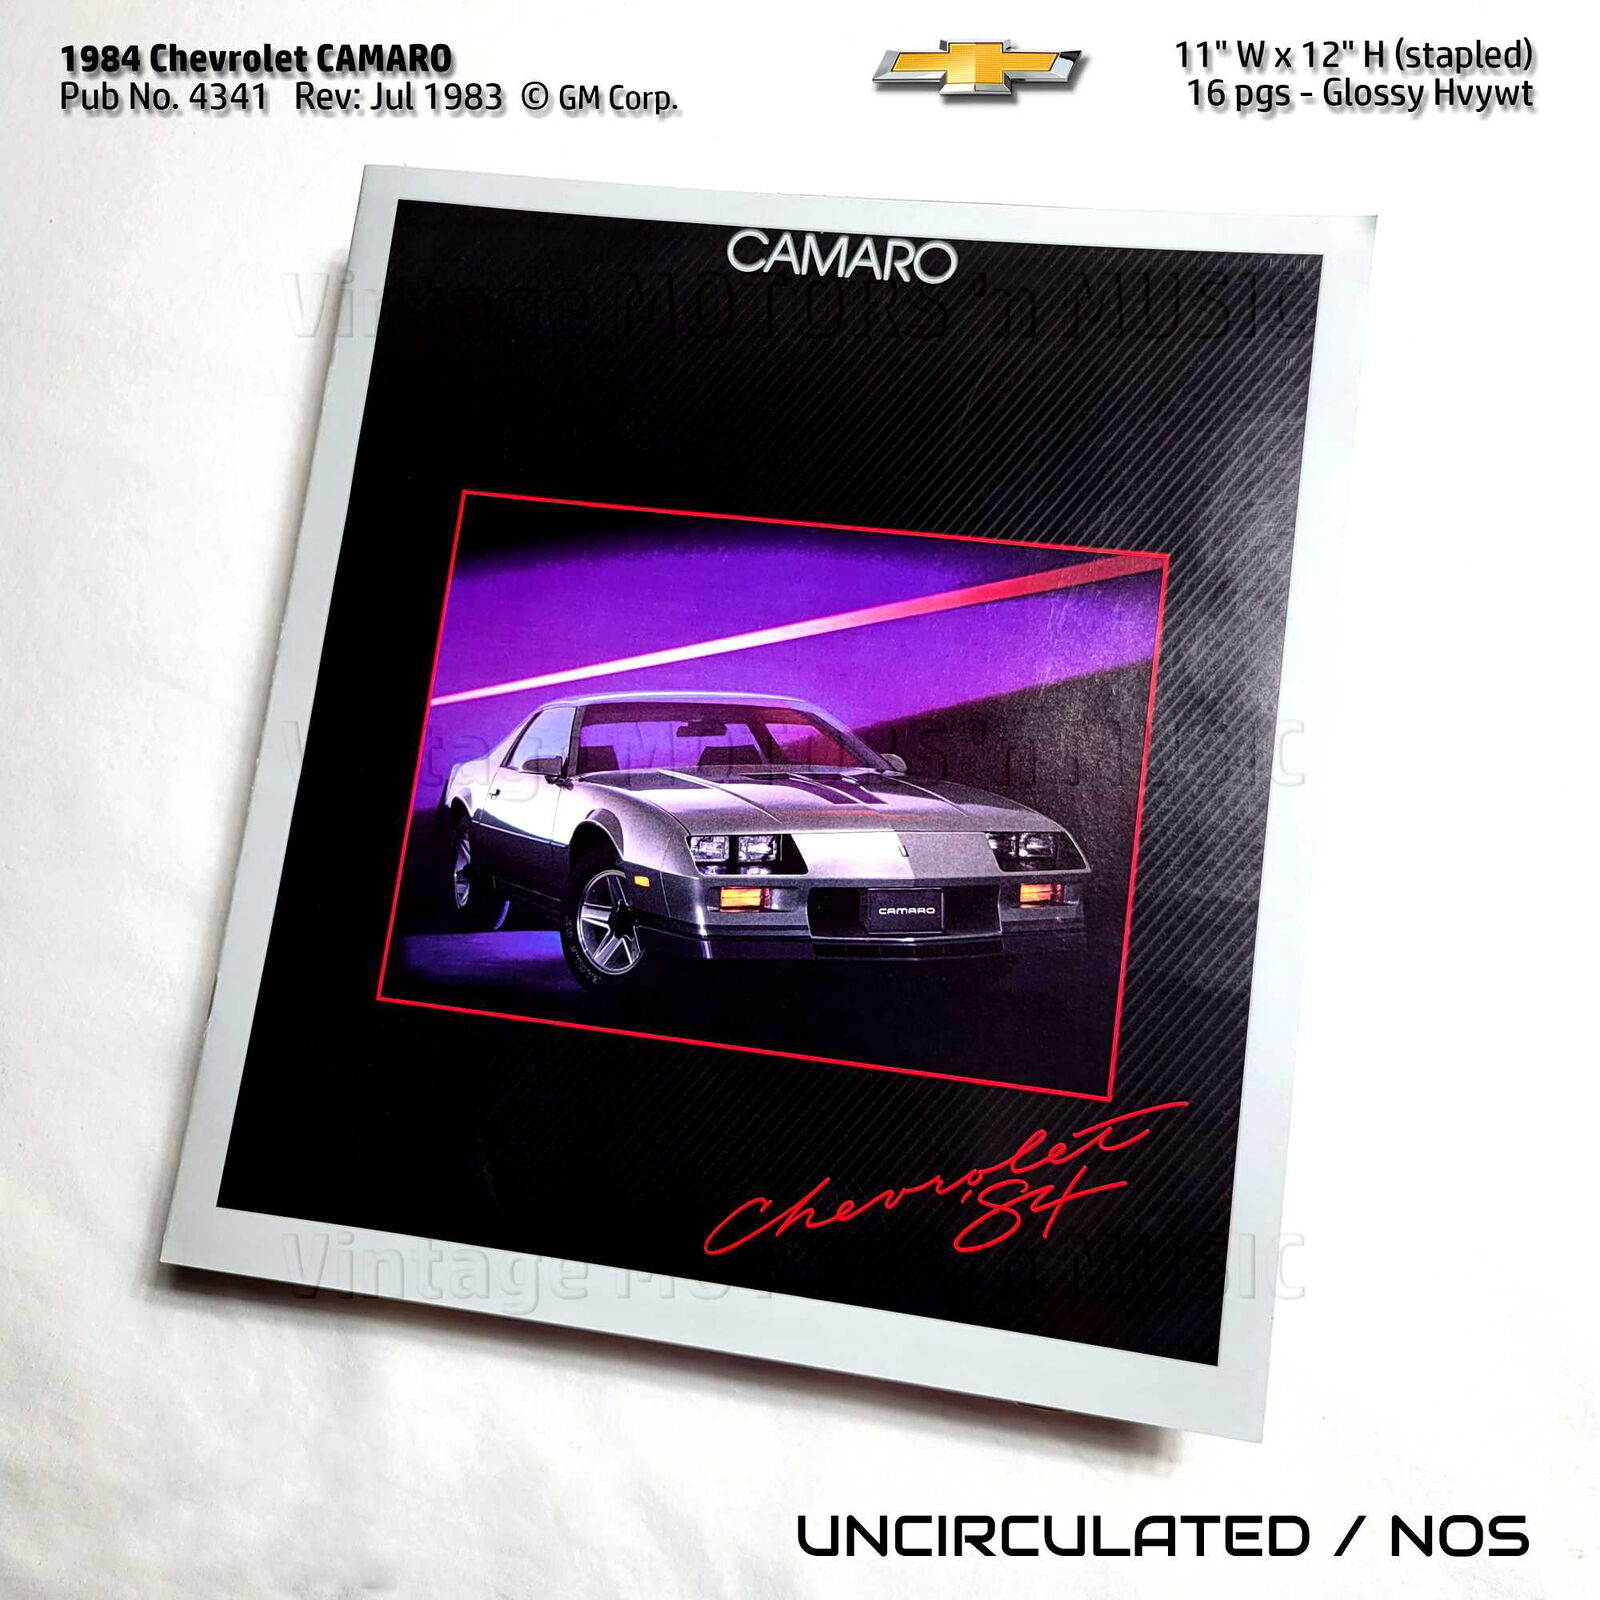 UNCIRCULATED 1984 Chevrolet Camaro 16 pg Color Brochure - Pub No 4341 Rev: 07-83